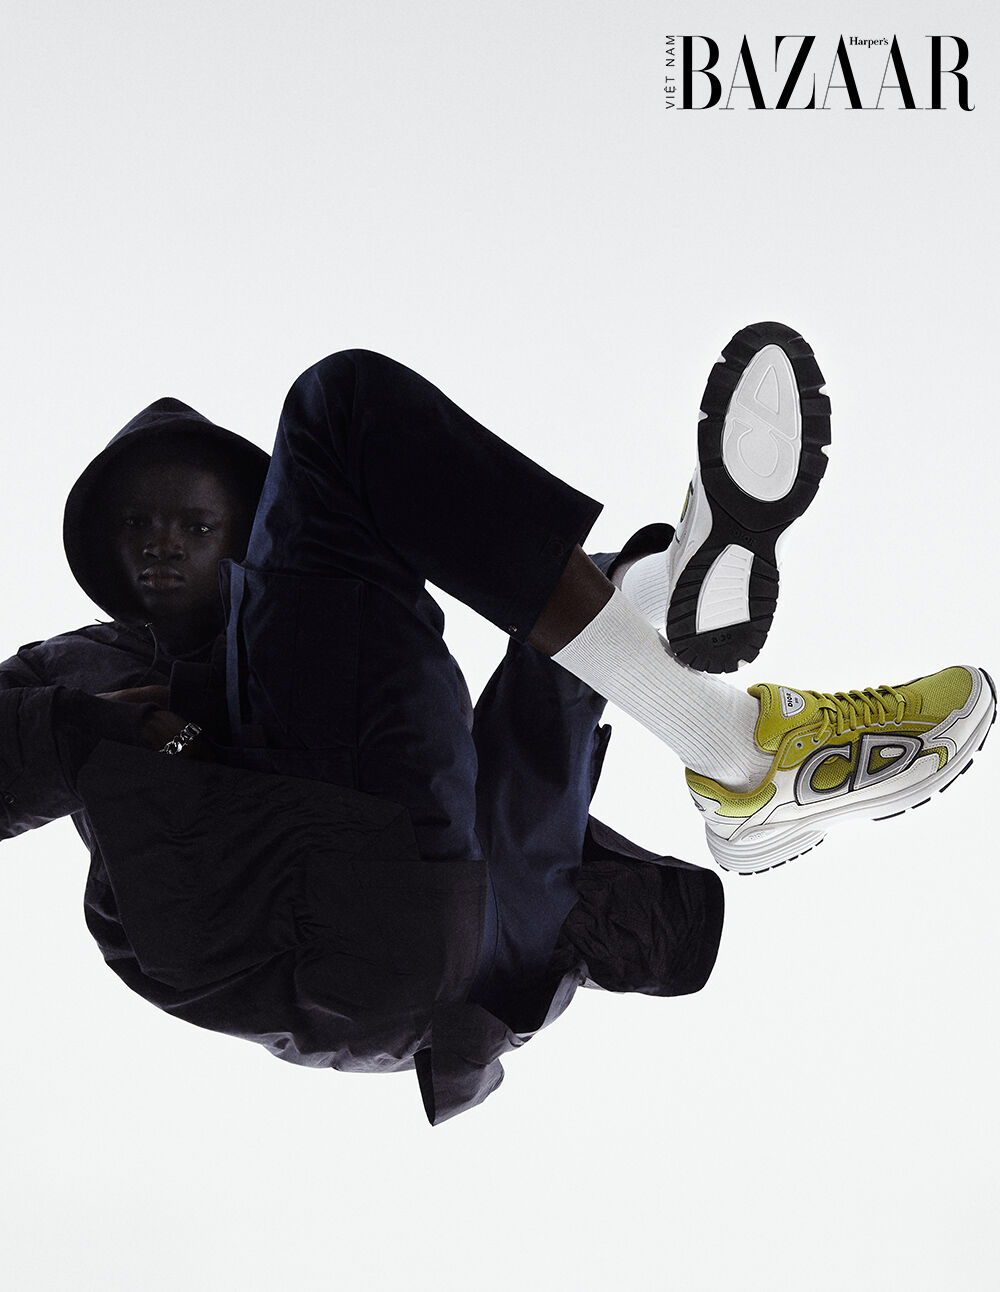 Dior B30 sneaker sẽ lên kệ trong tháng 10 với nhiều màu sắc hấp dẫn